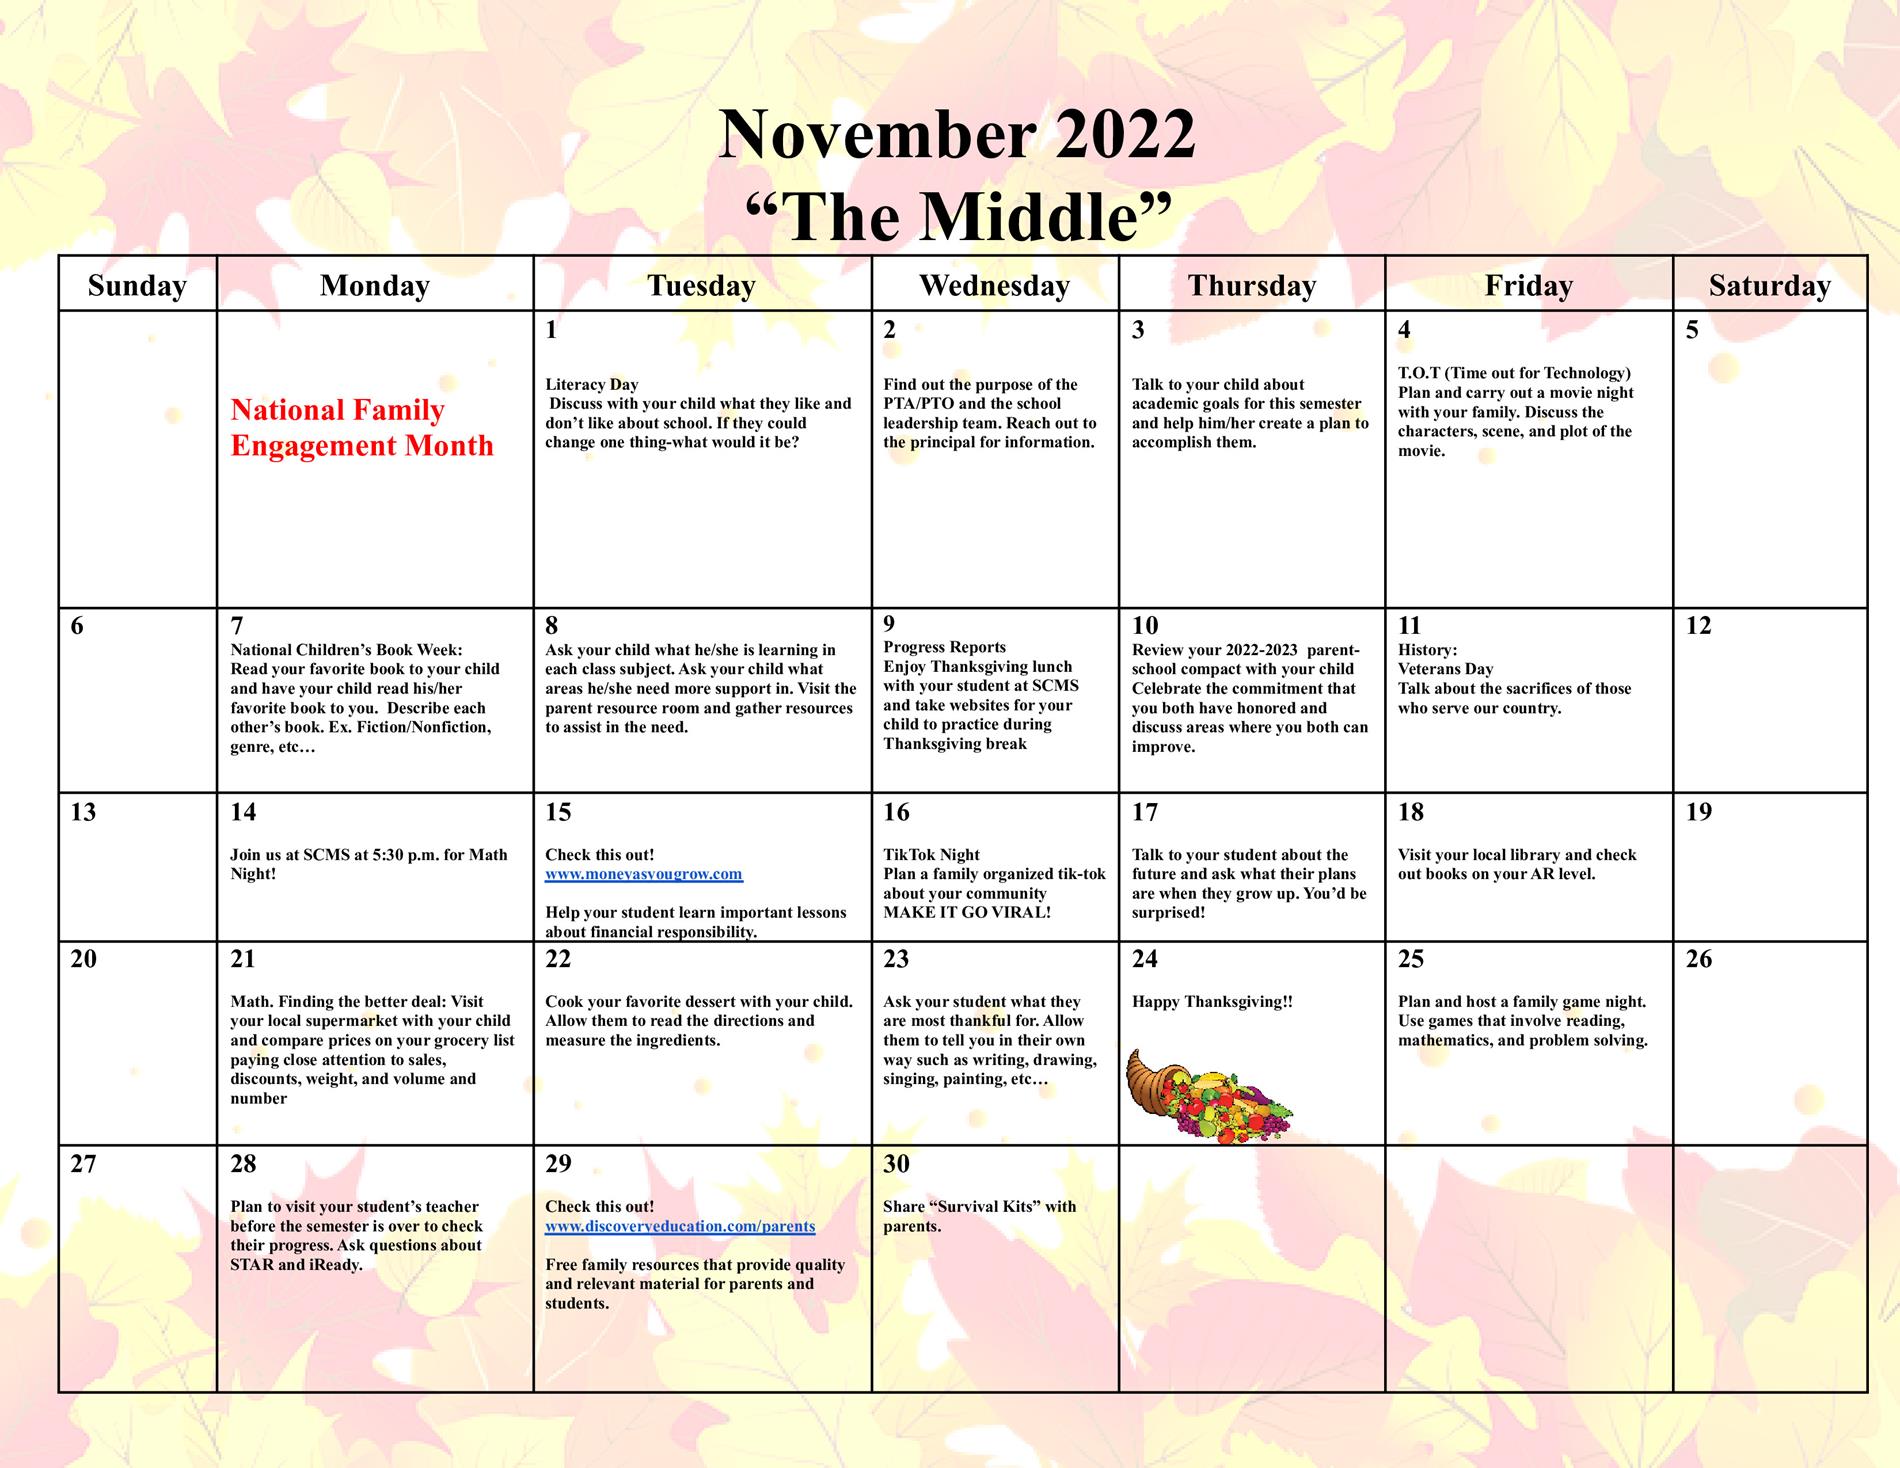 November Family Engagement Calendar